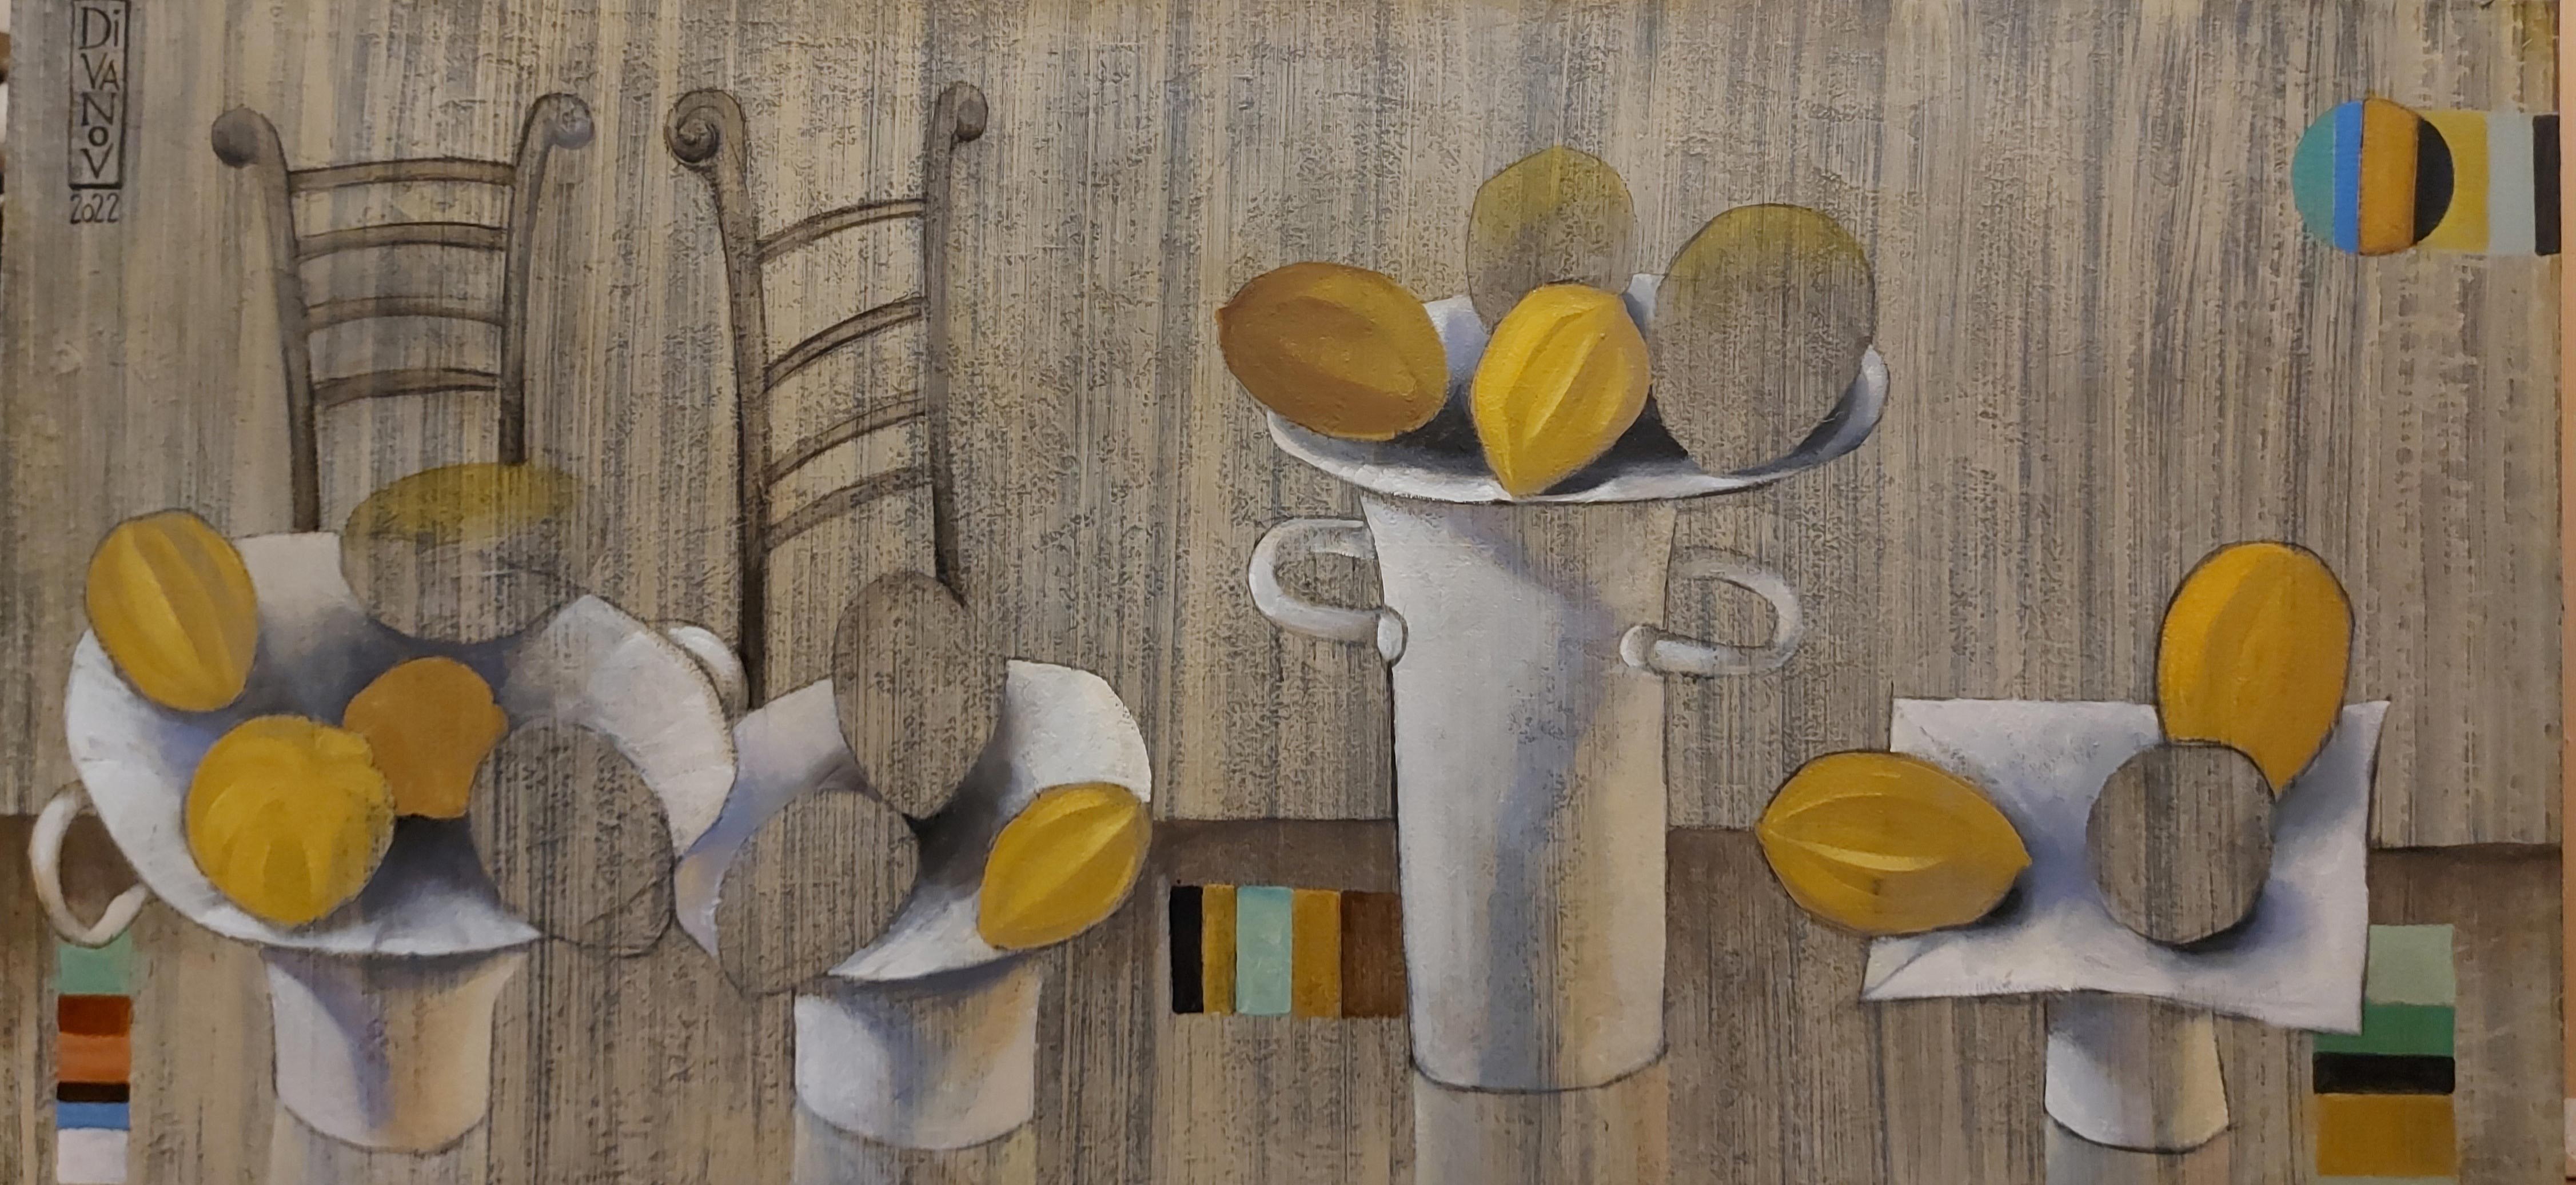 Still Life With Lemons - 1, Dmitry Ivanov, Buy the painting Oil